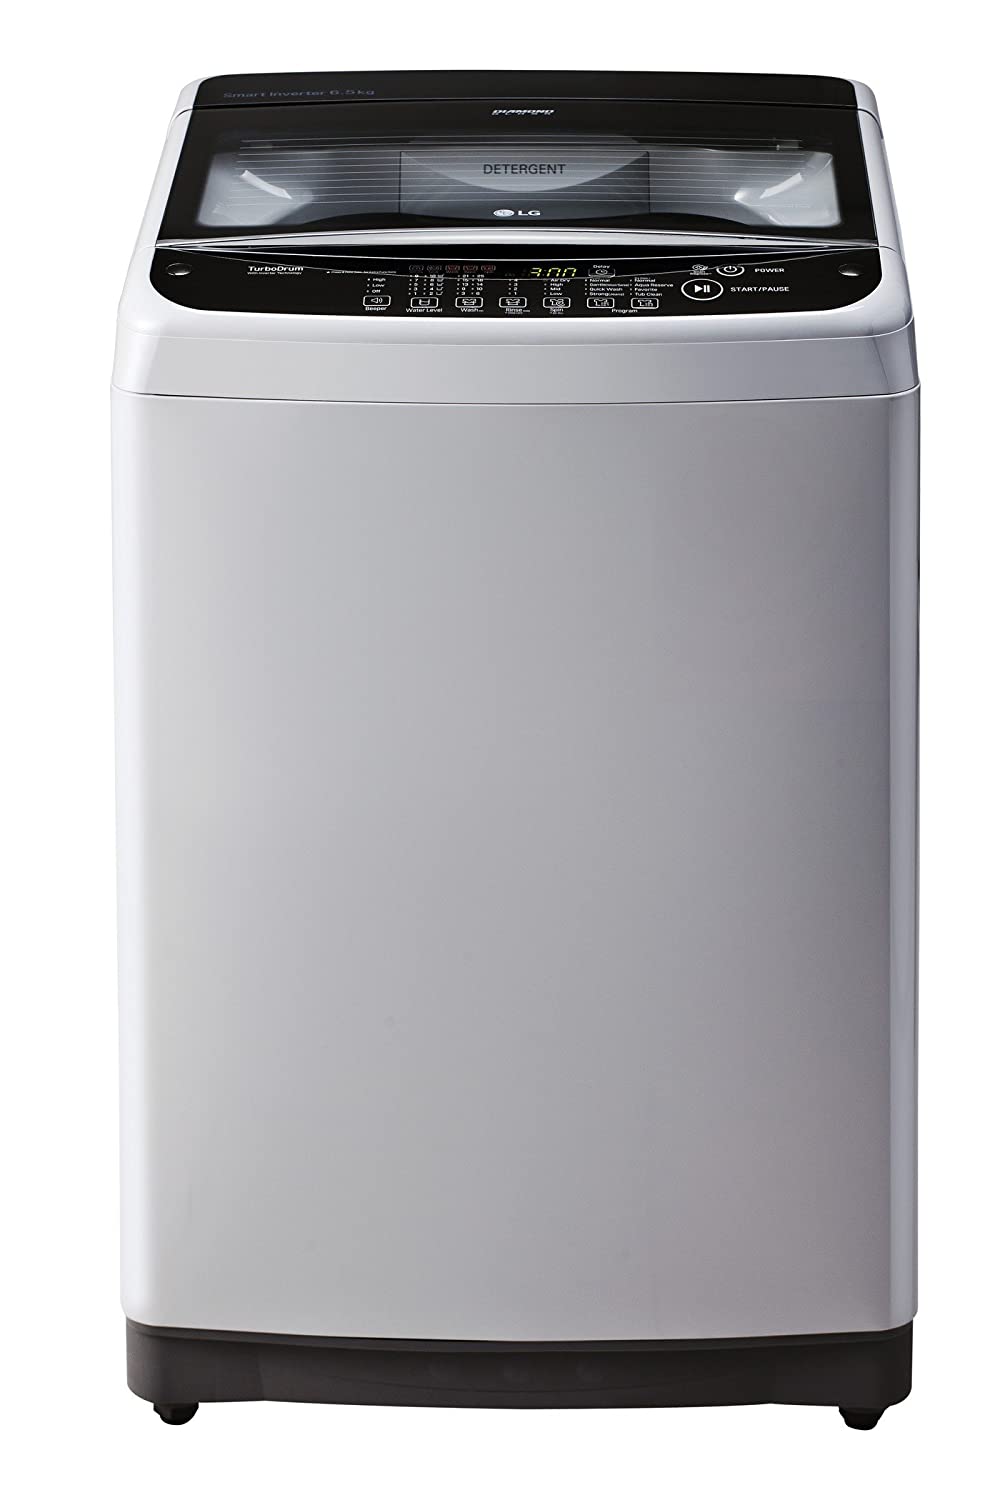 LG 6.5 kg Fully Automatic Top Loading Washing Machine T7581NEDLJ